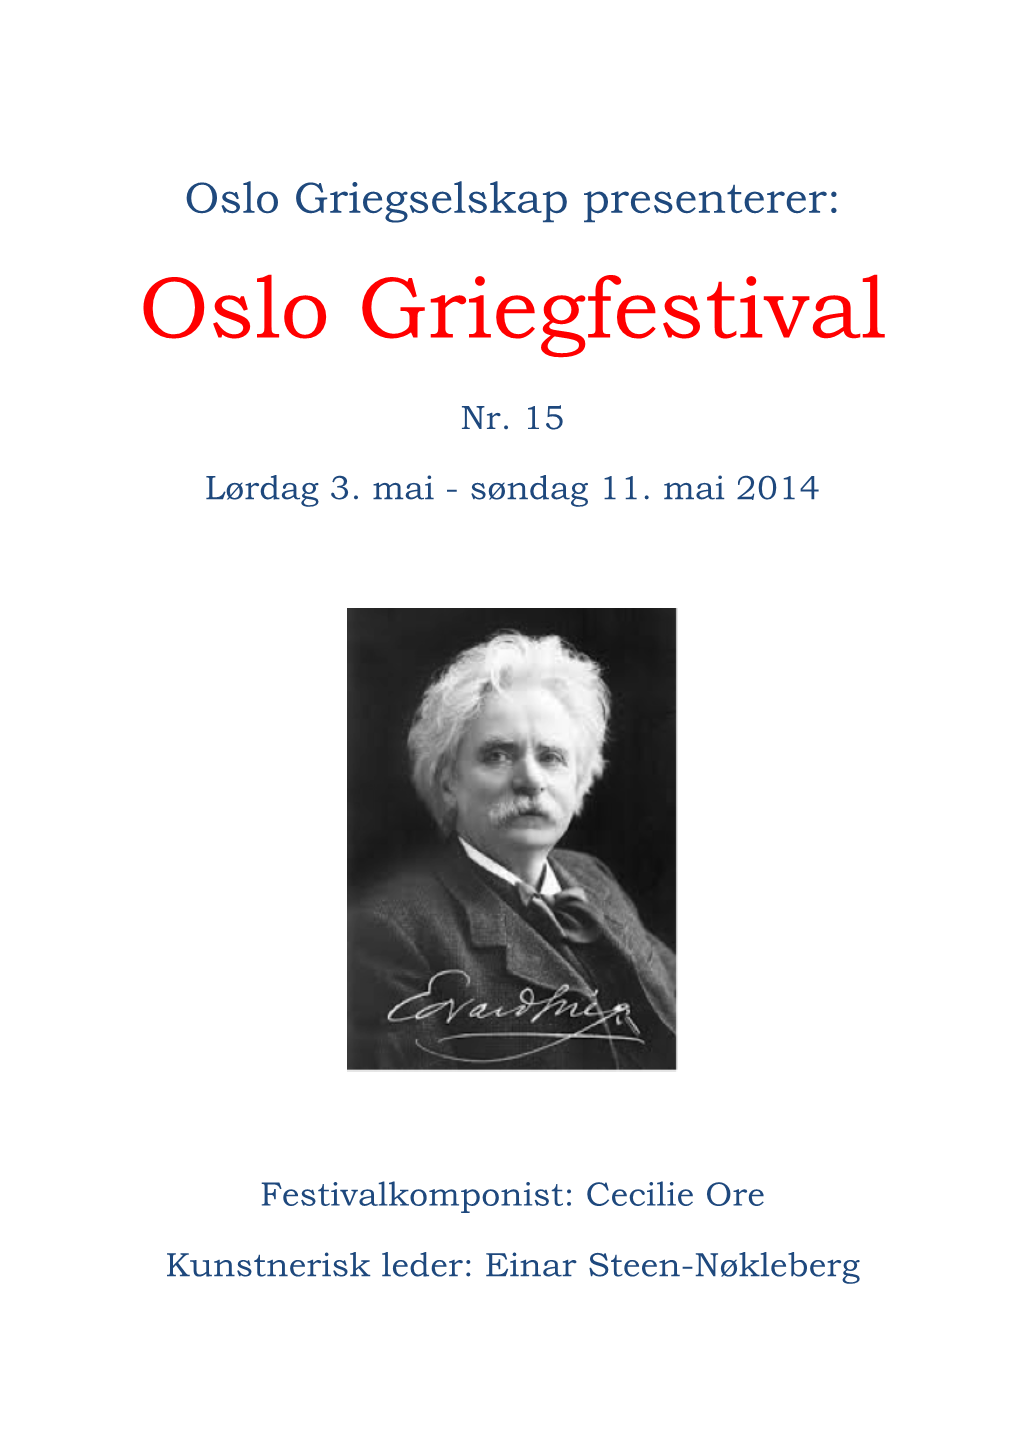 Oslo Griegfestival